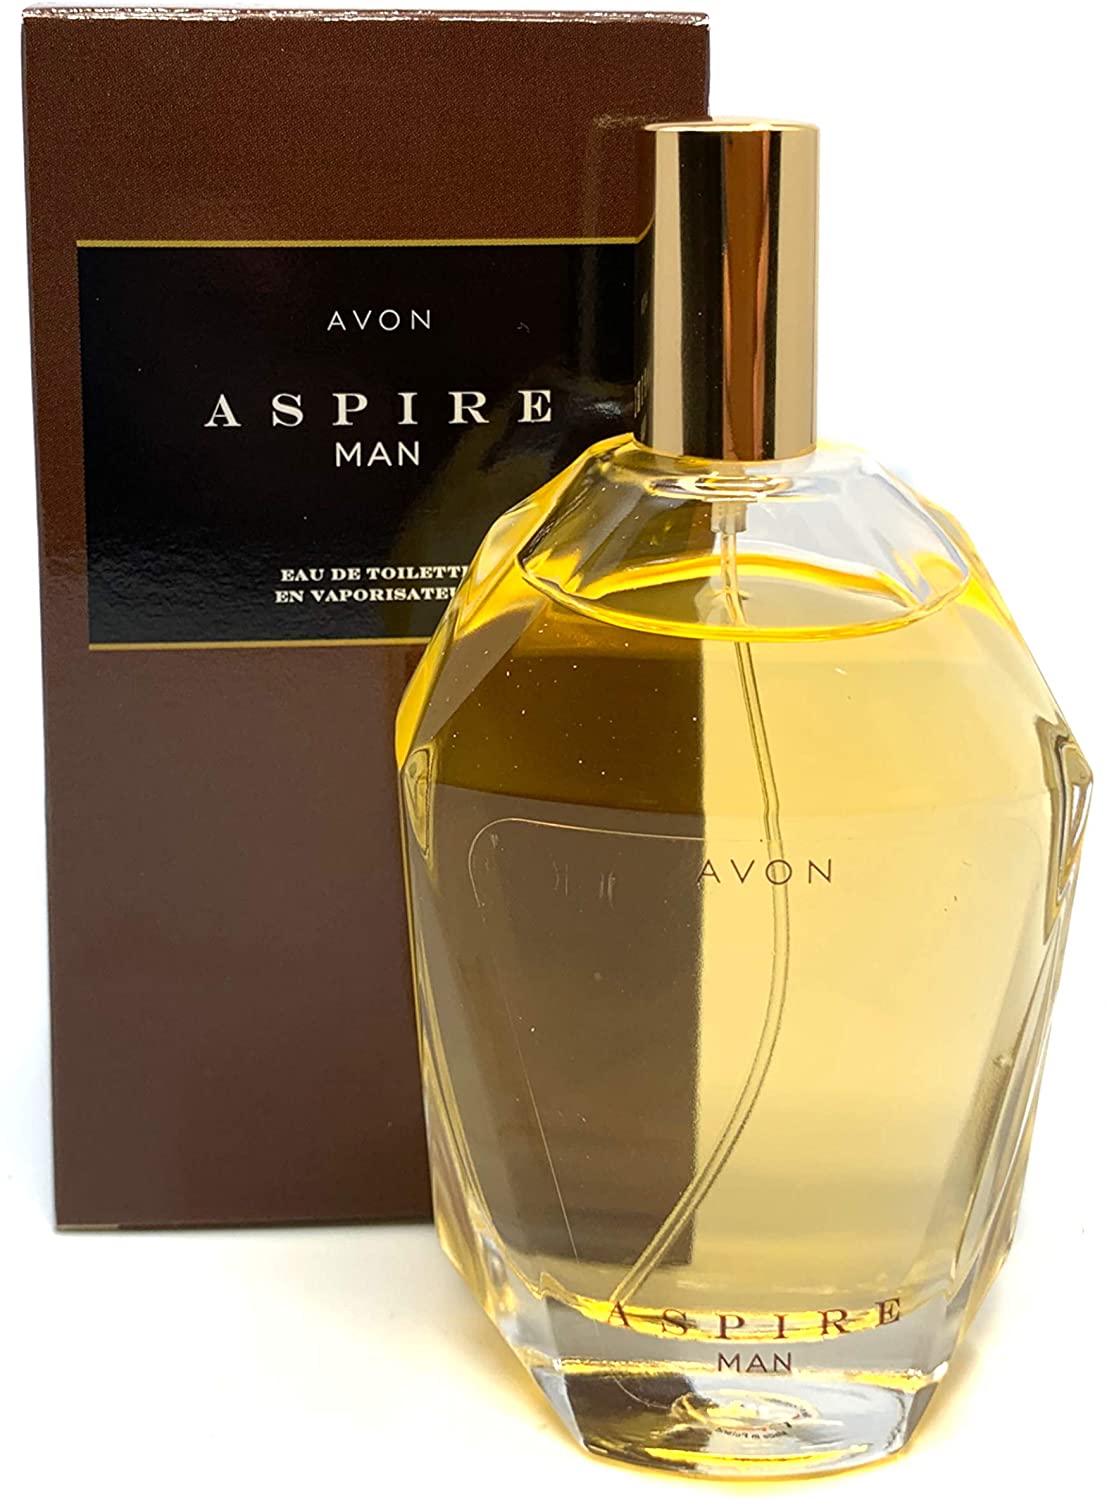 Aspire Avon perfume for men